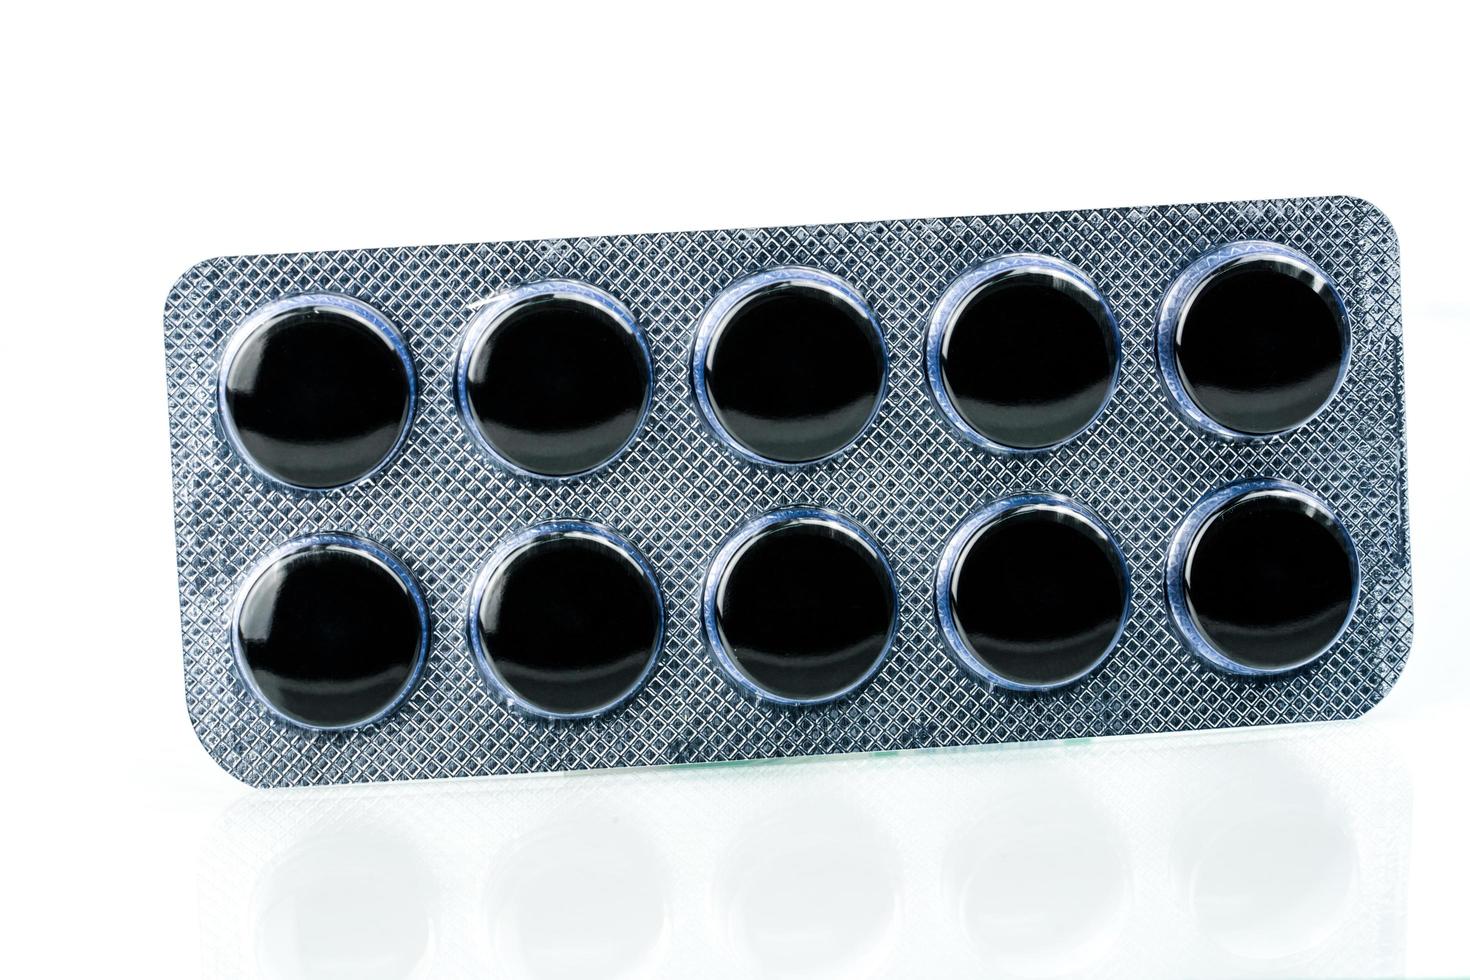 aktivt kol tabletter piller i blisterförpackning isolerad på vit bakgrund med kopia utrymme för text. svarta runda piller för behandling förgiftning från ta drog överdos foto